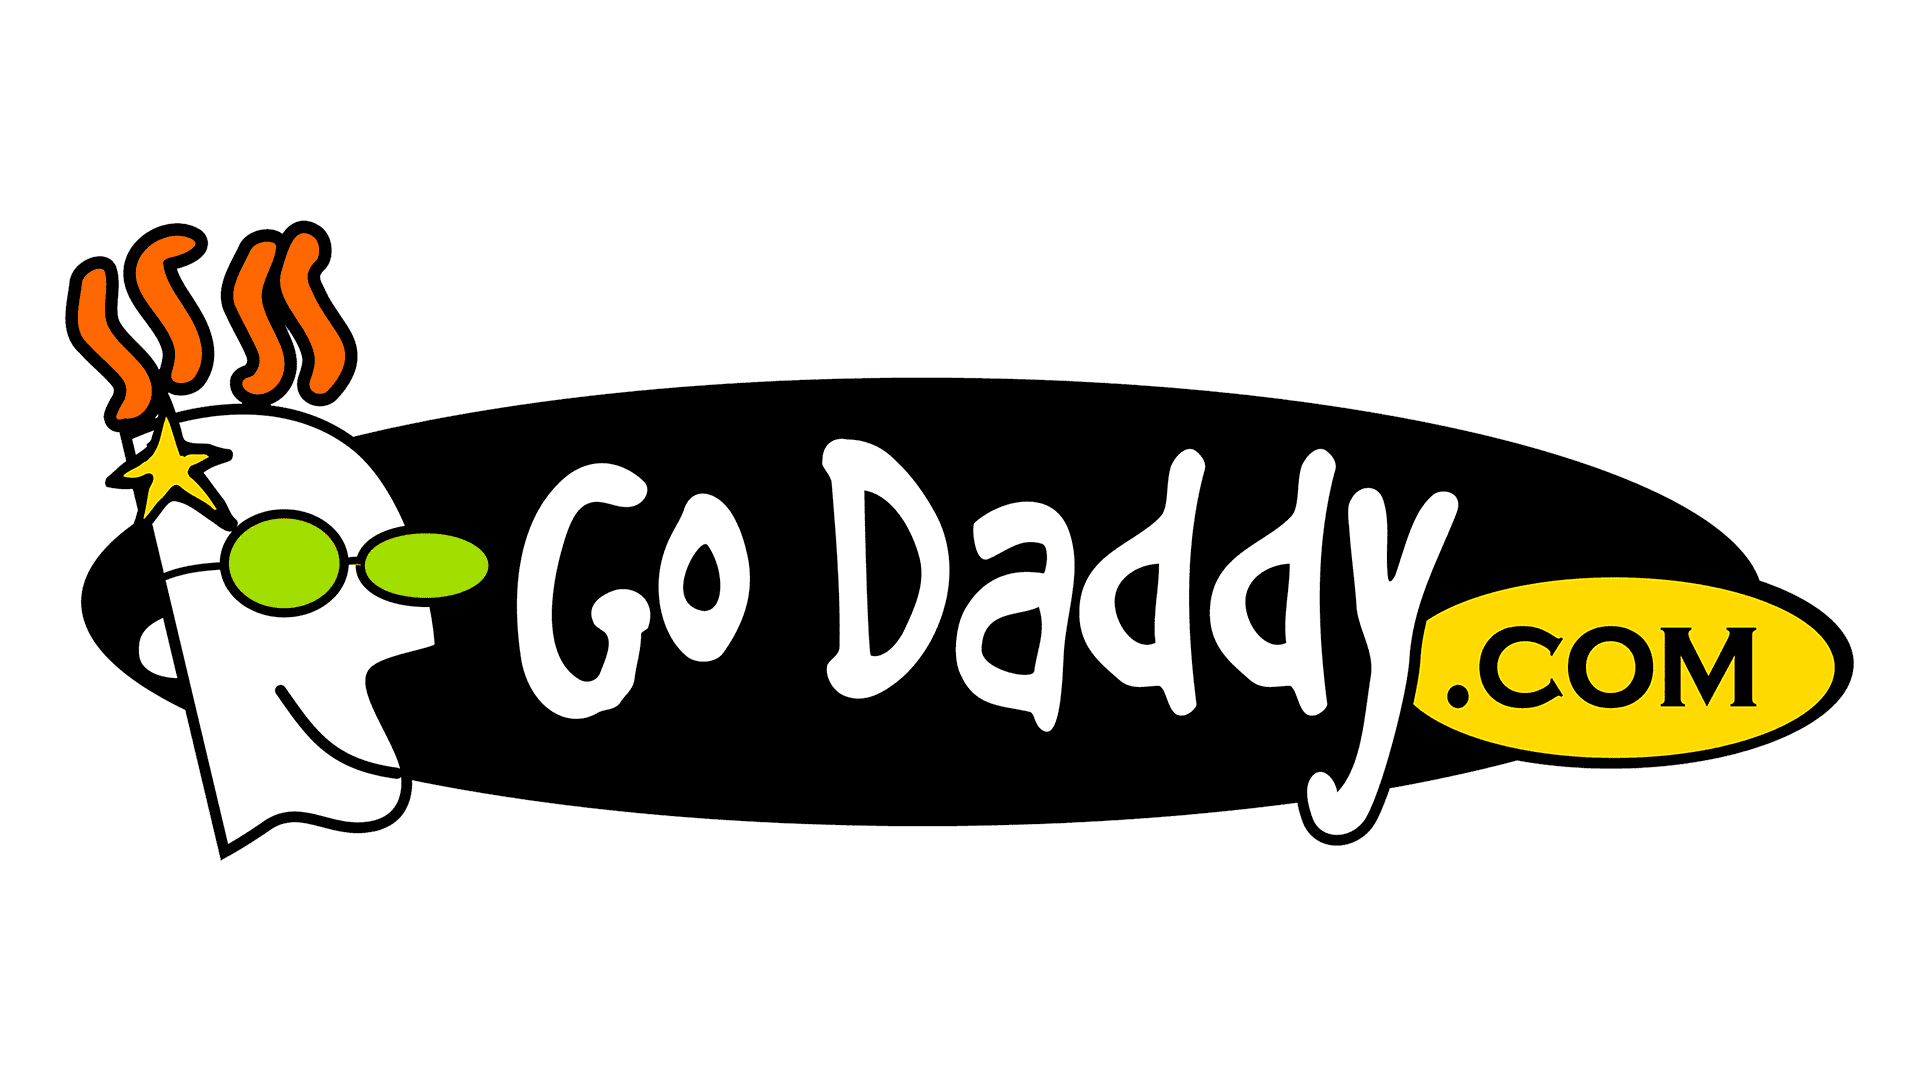 Godaddy. Go Daddy. Daddies.com. Godaddy.com.